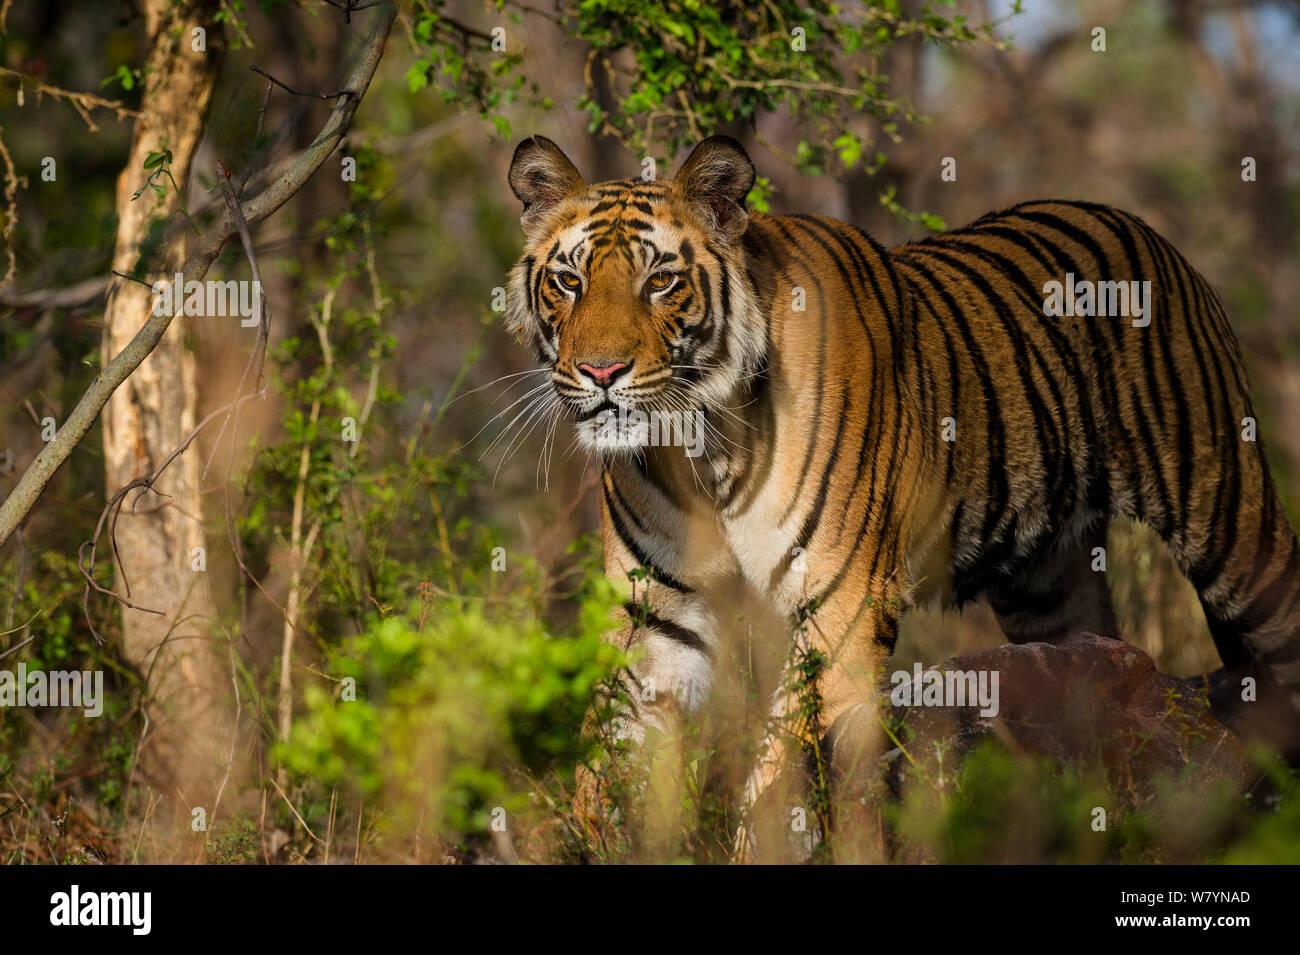 Male Bengal Tiger (Panthera tigris) , Bandhavgarh National Park, India. Stock Photo